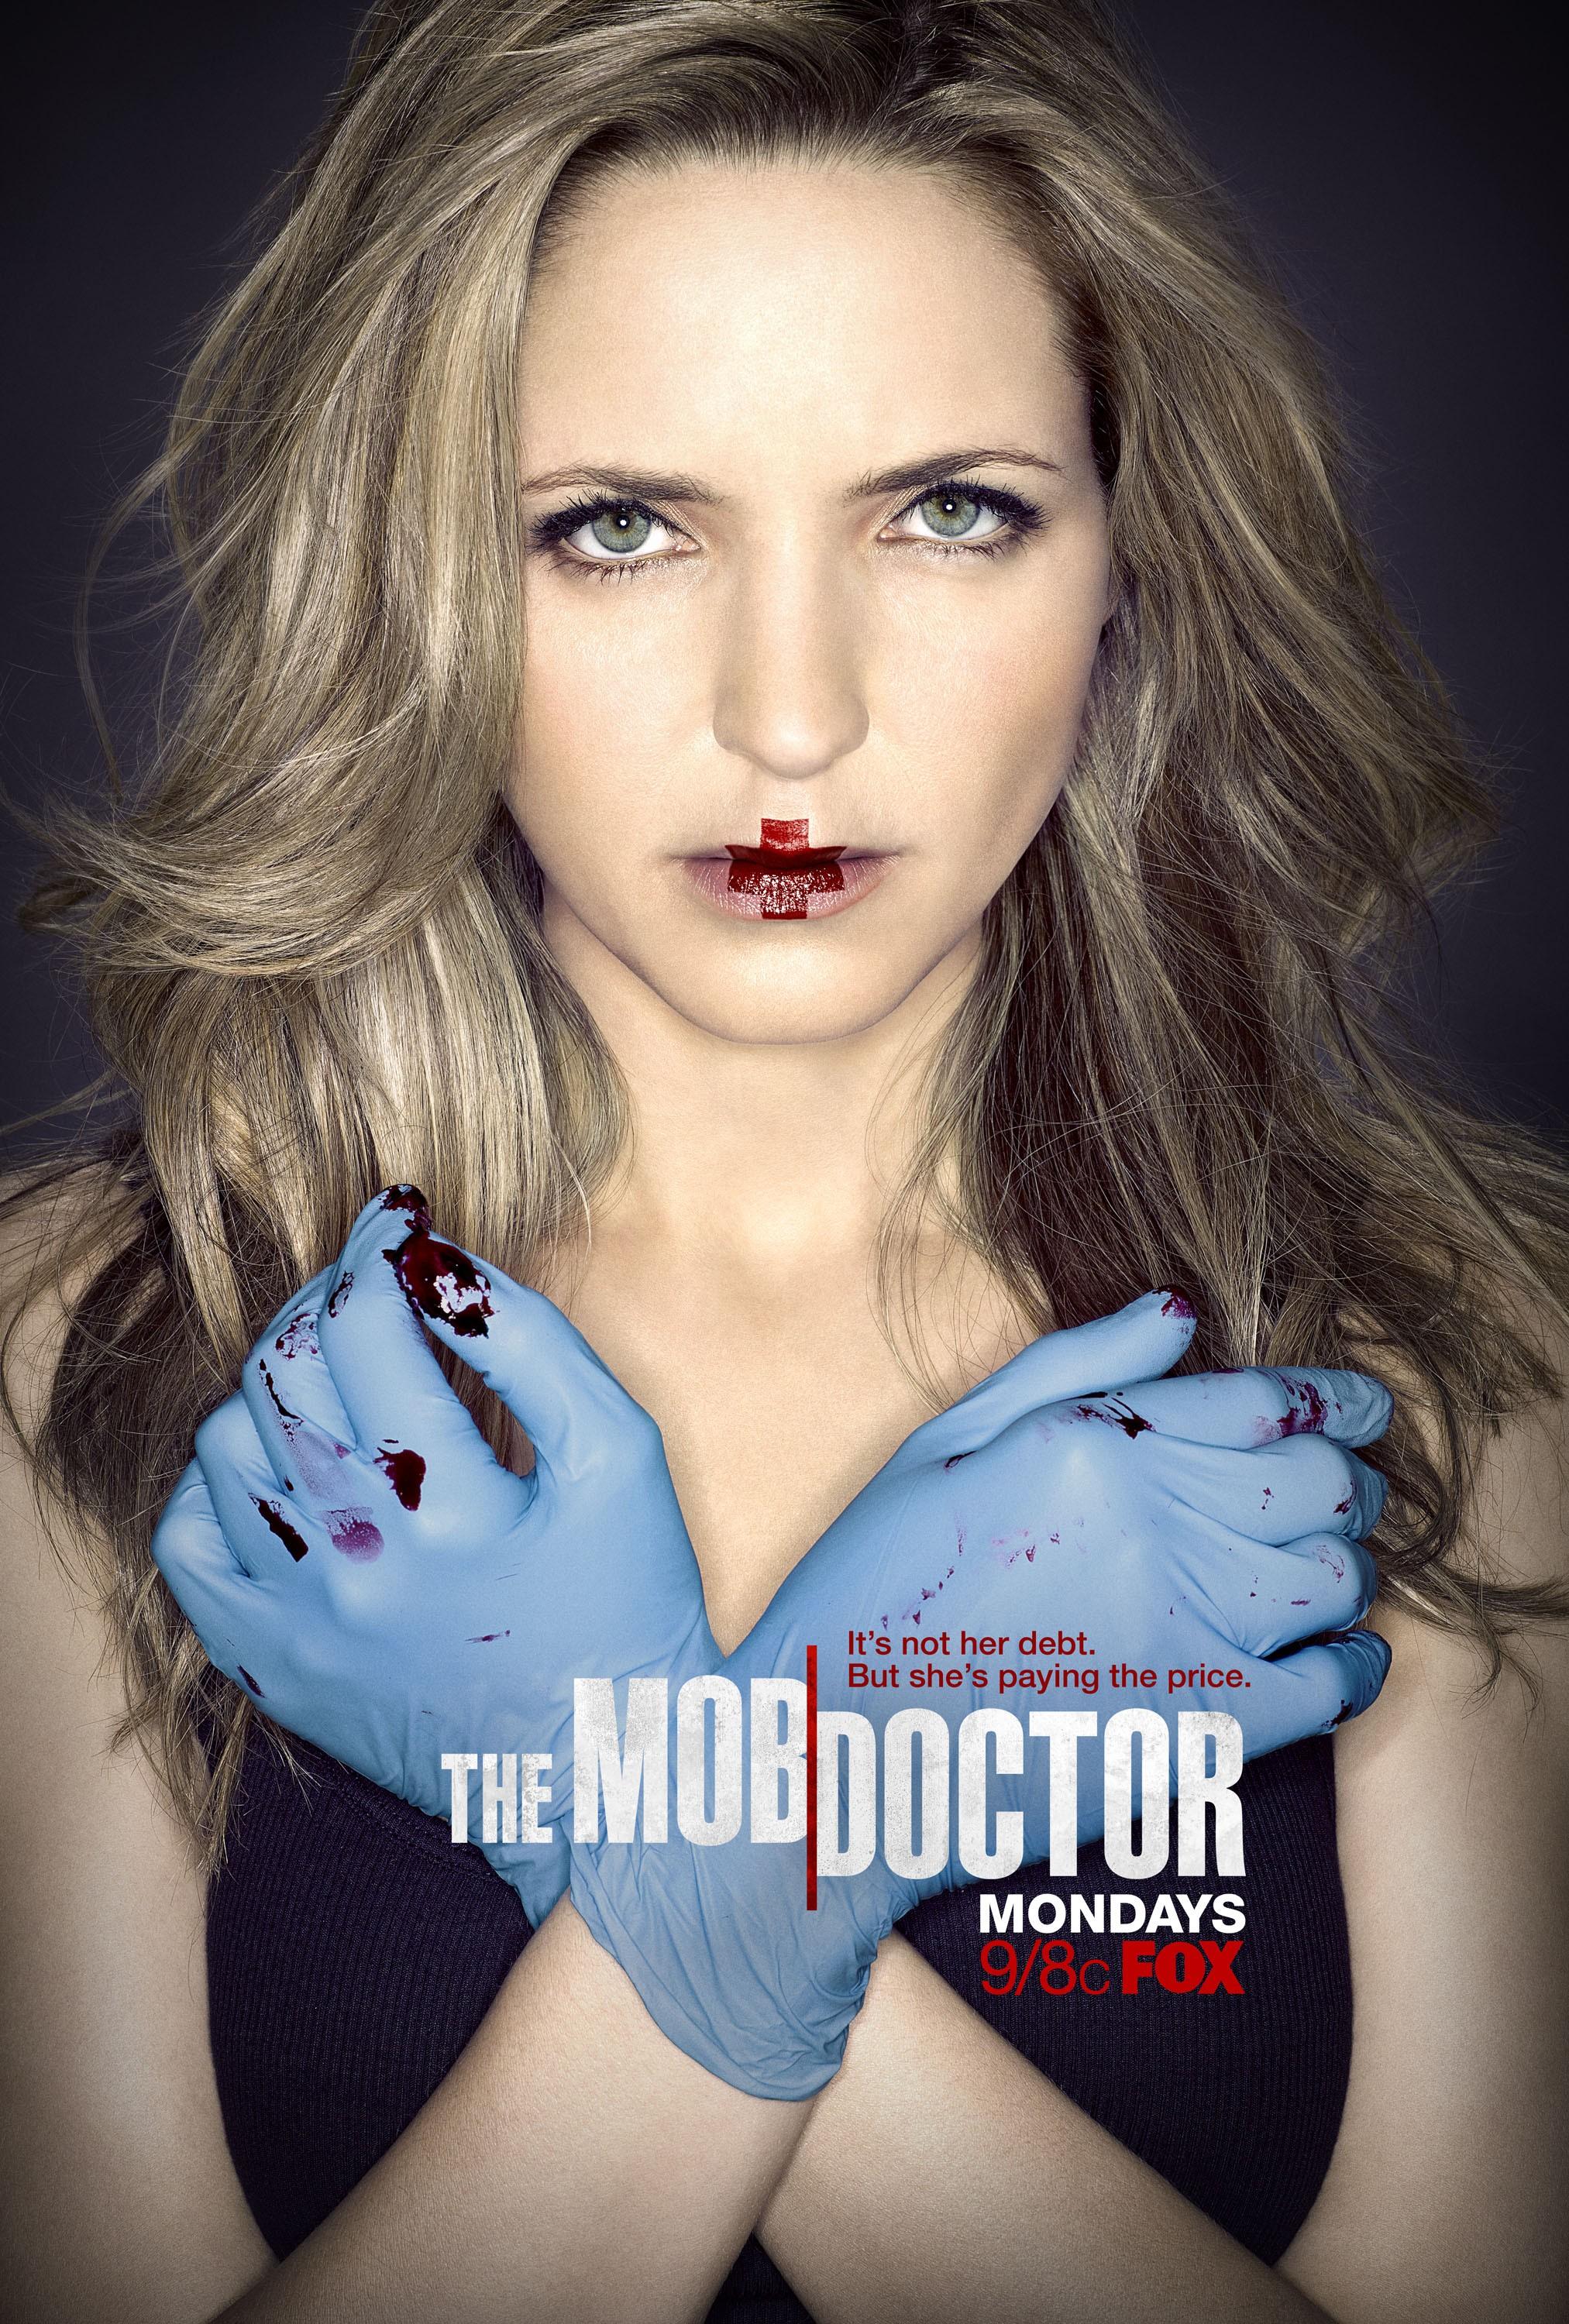 Постер фильма Доктор мафии | Mob Doctor